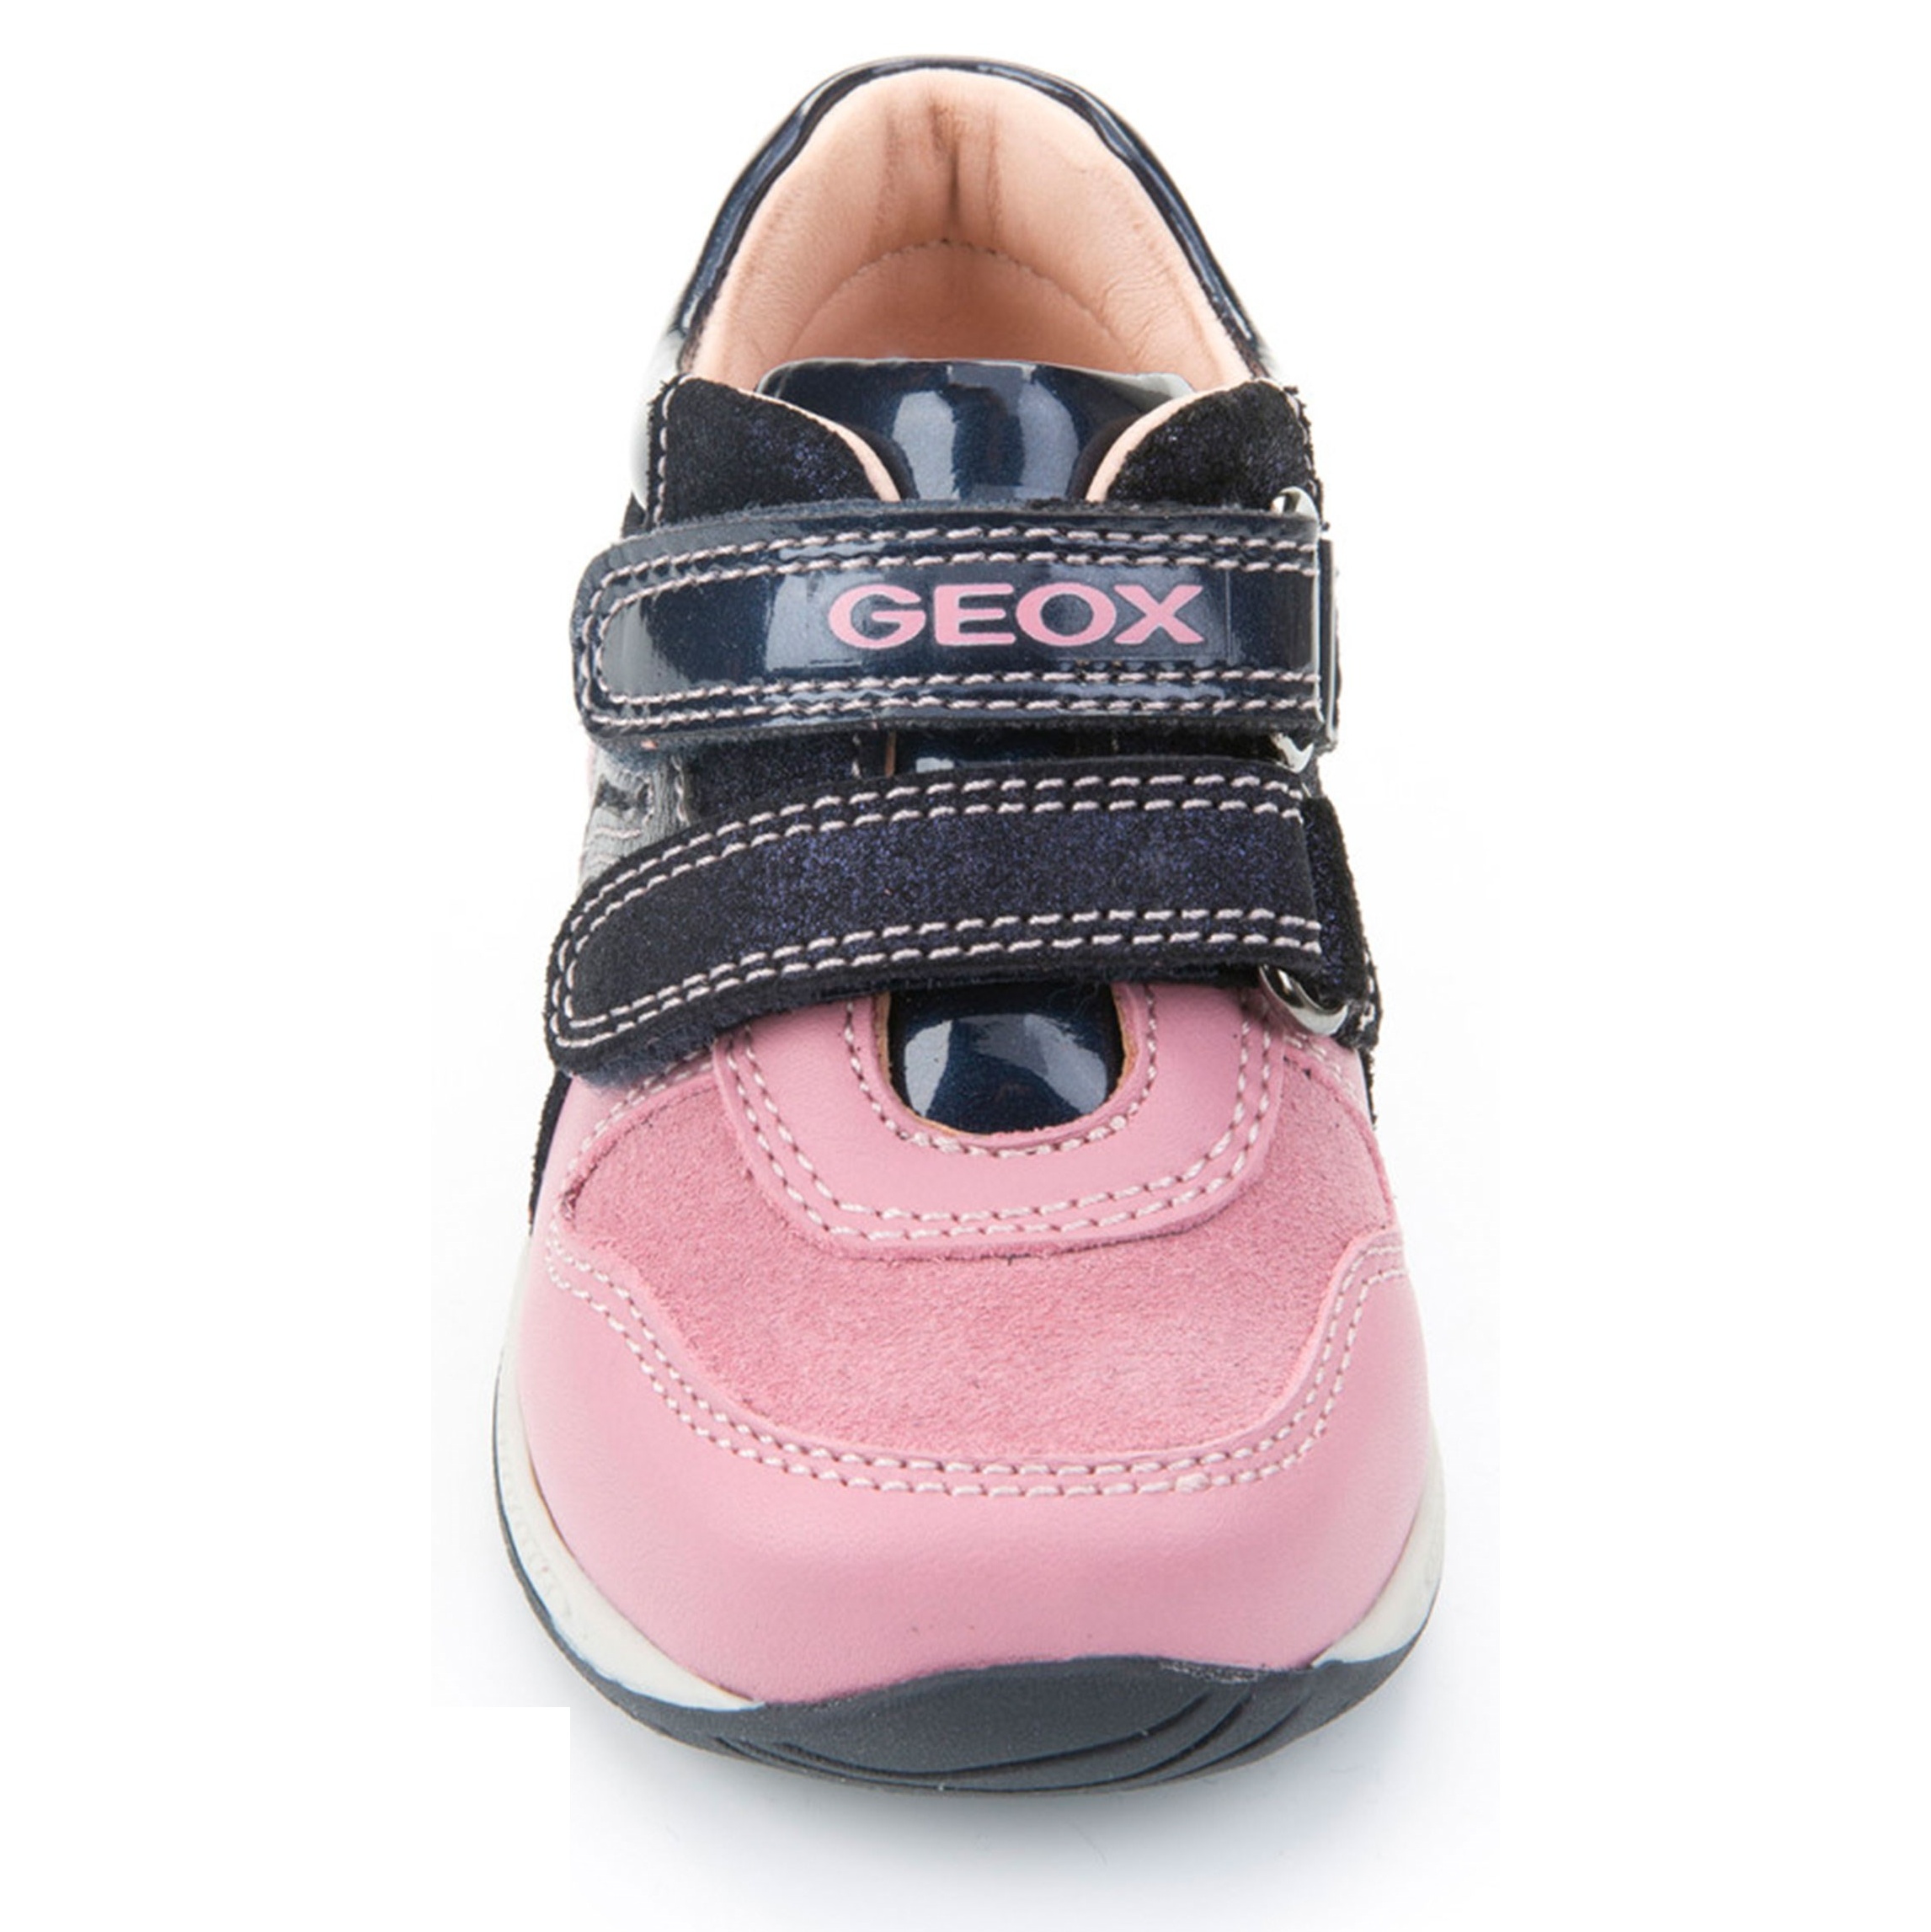 کفش چسبی نوزادی دخترانه - جی اوکس - سرمه اي و صورتي - 5